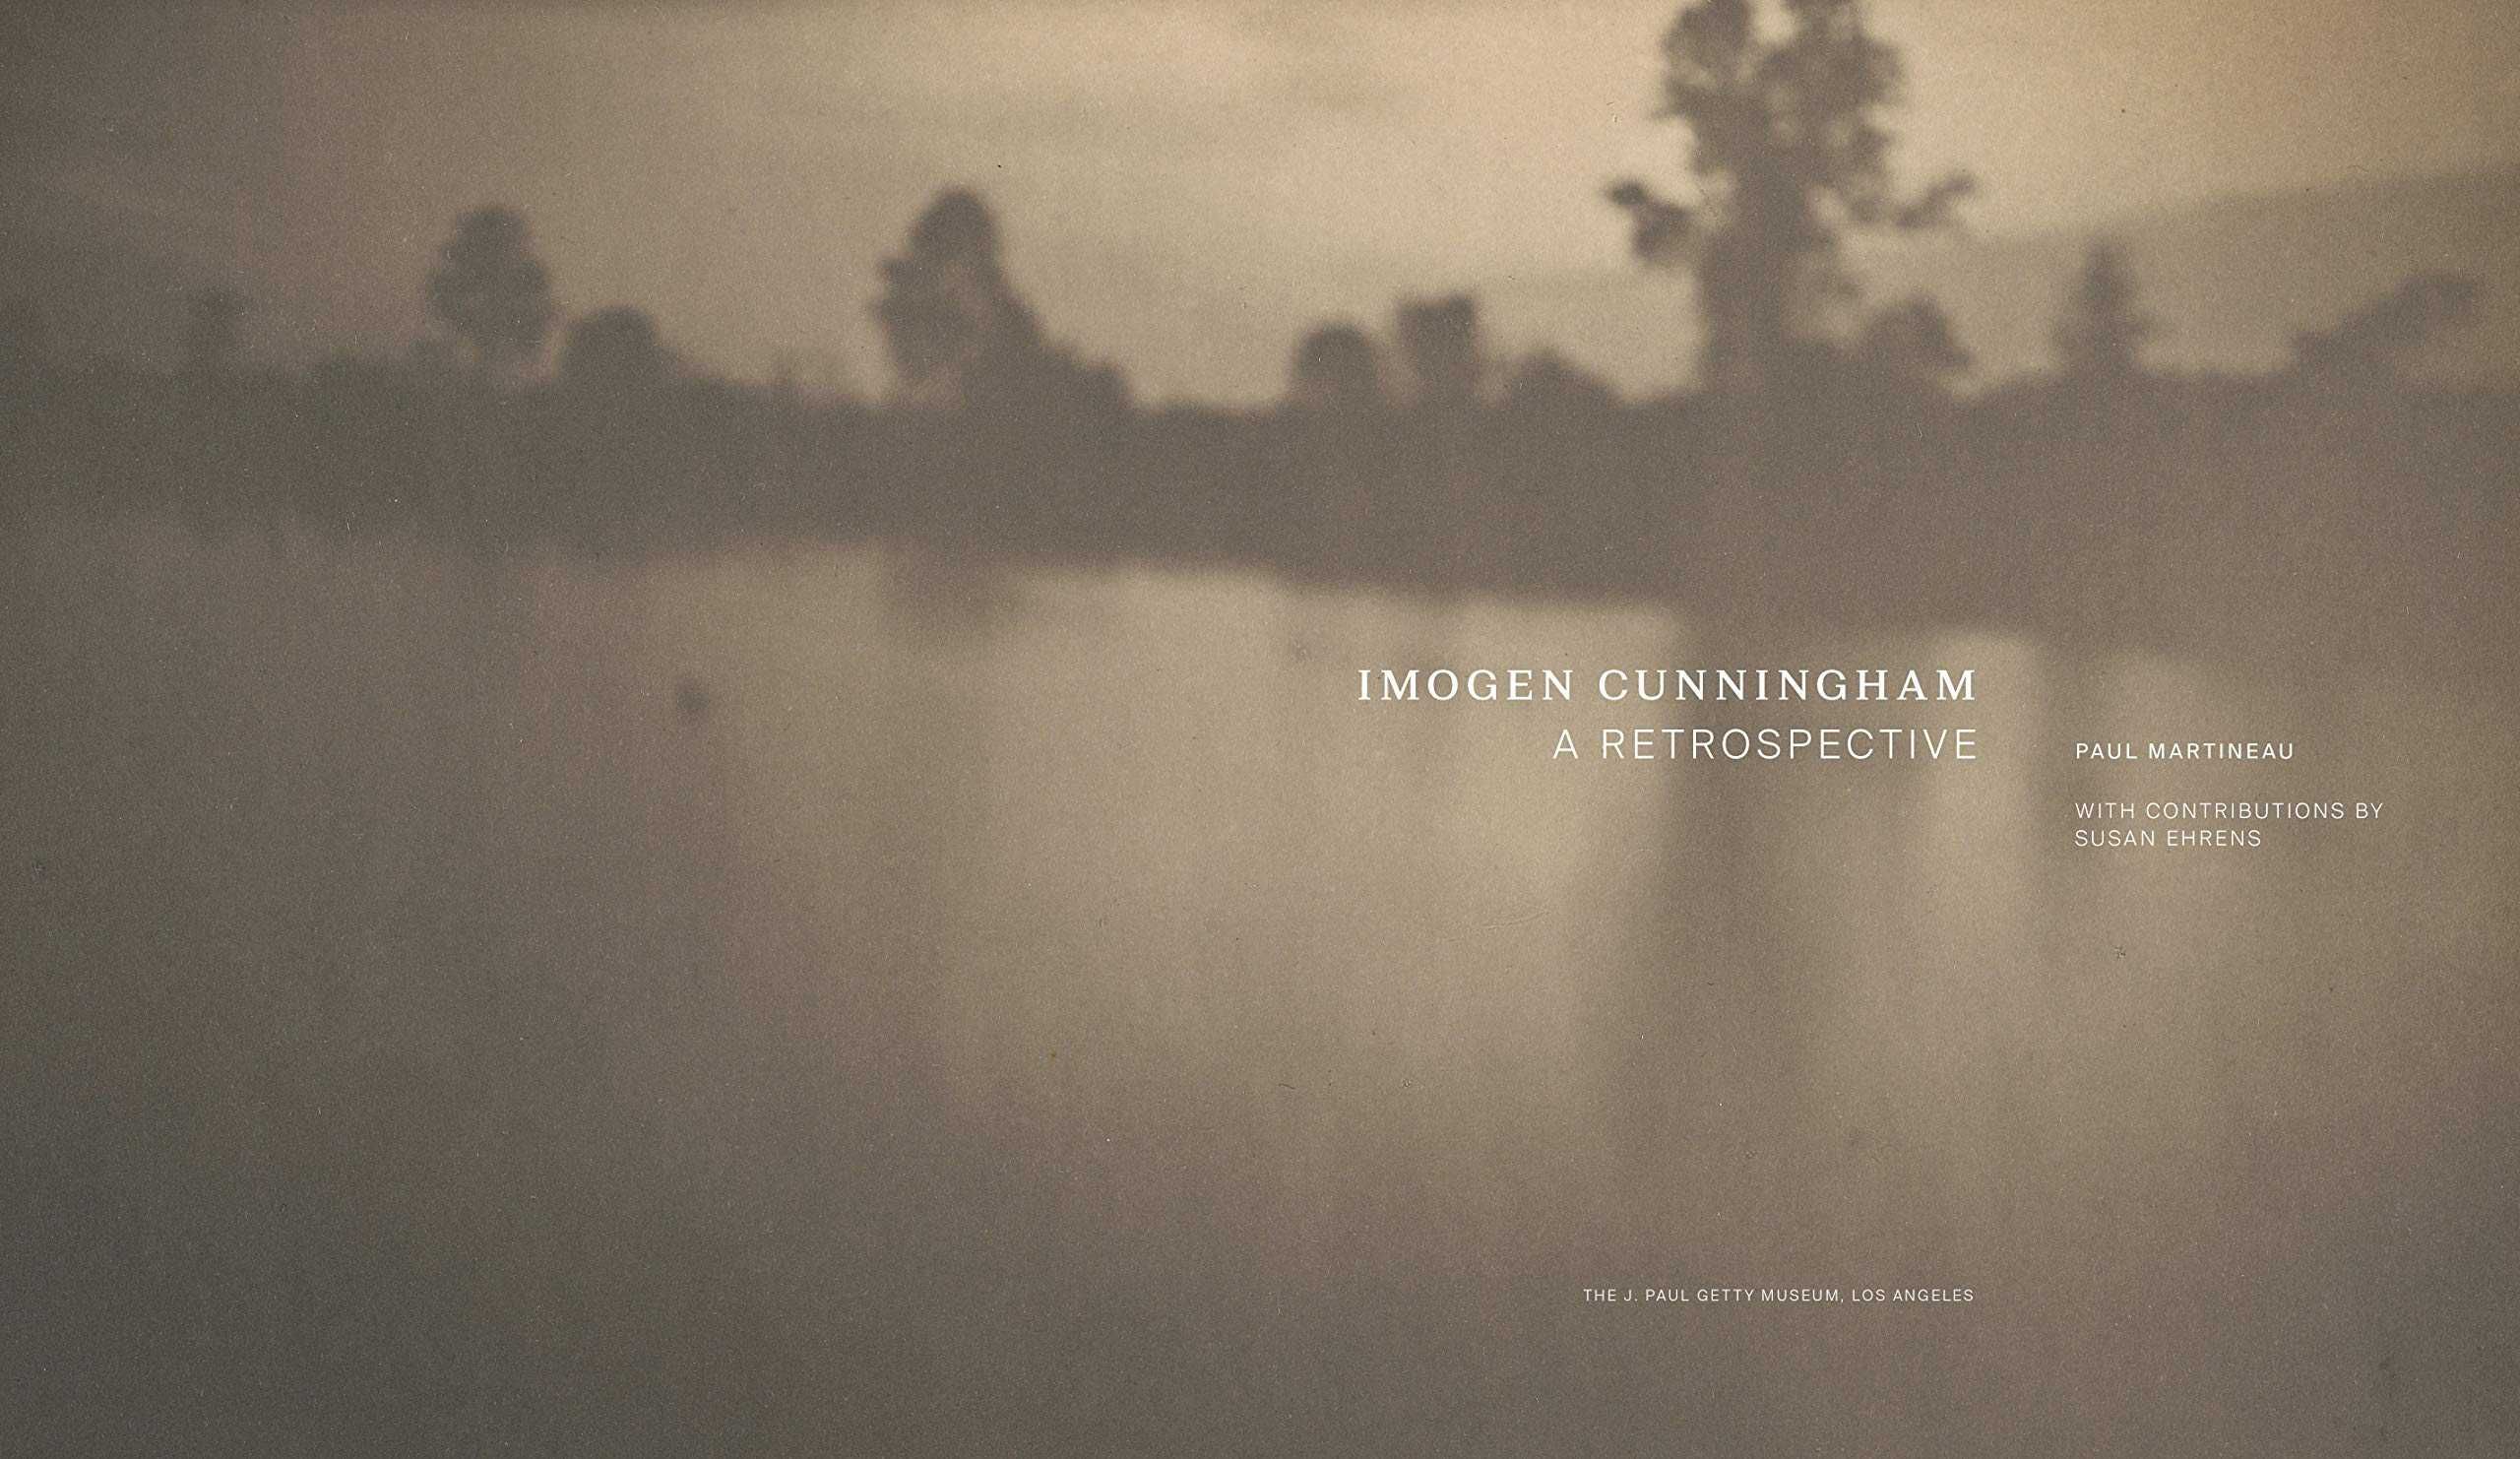 Книга - фотоальбом A Retrospective. Imogen Cunningham.